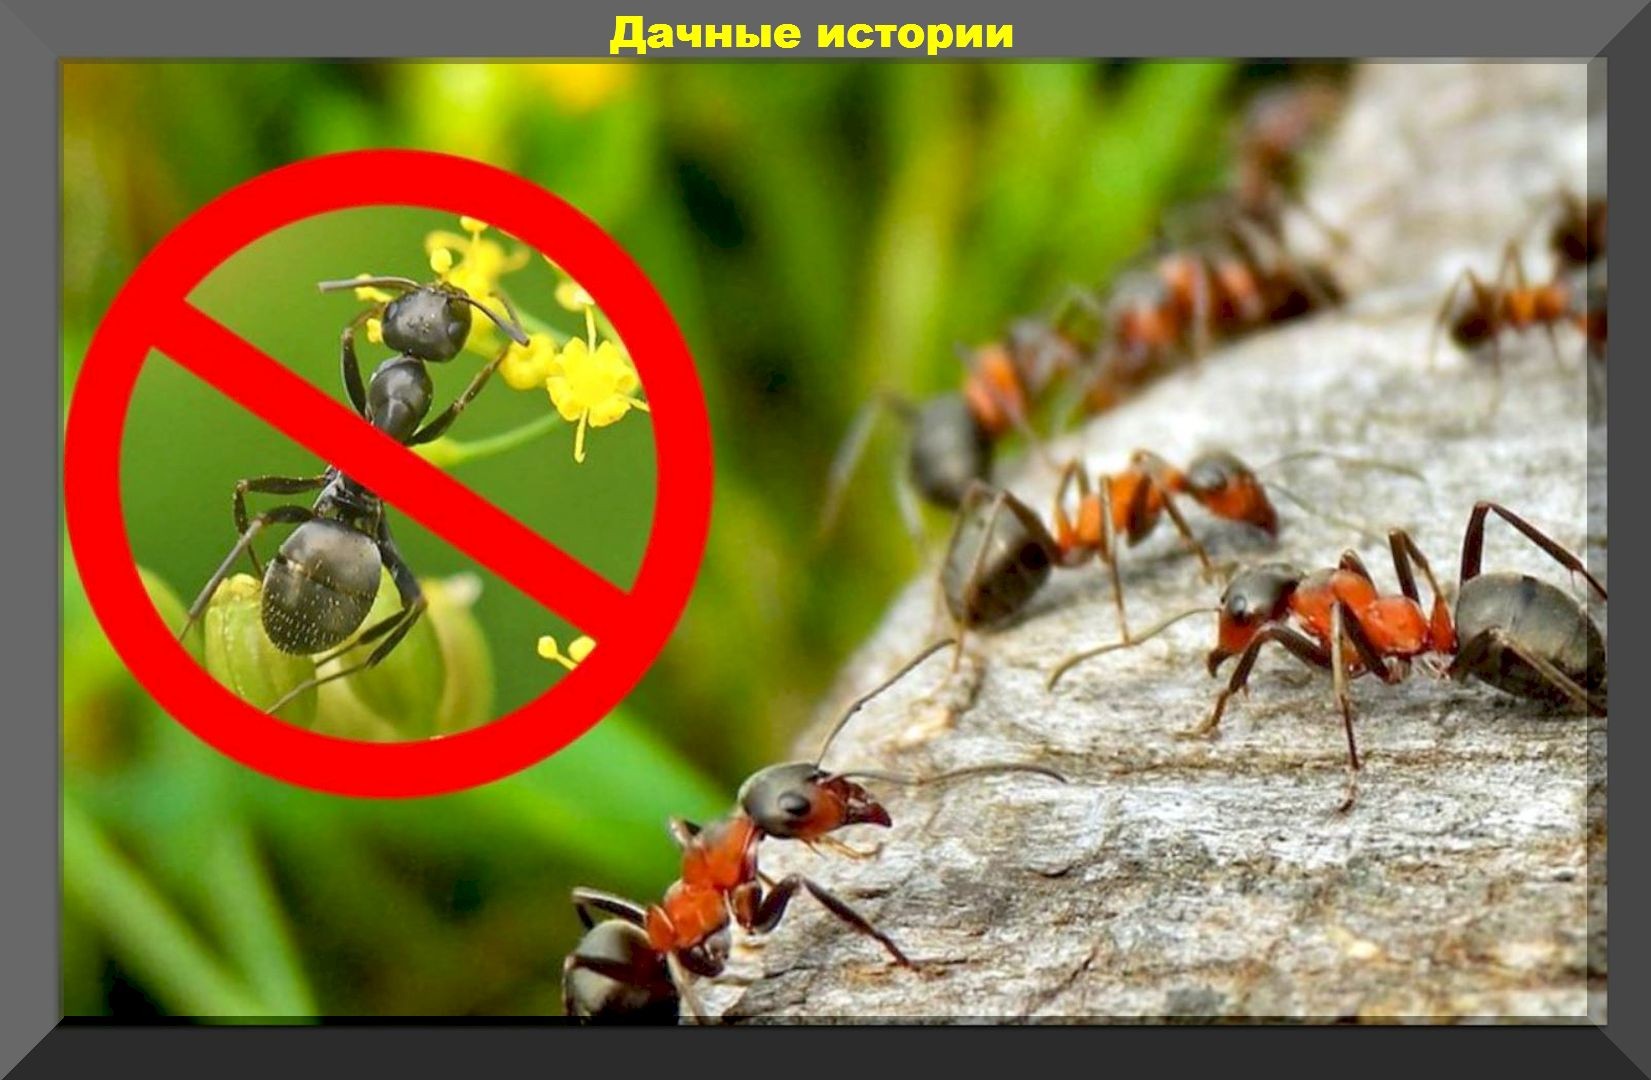 Приманка против муравьев и тараканов: очень простой, недорогой и экологичный способ борьбы с вредителями